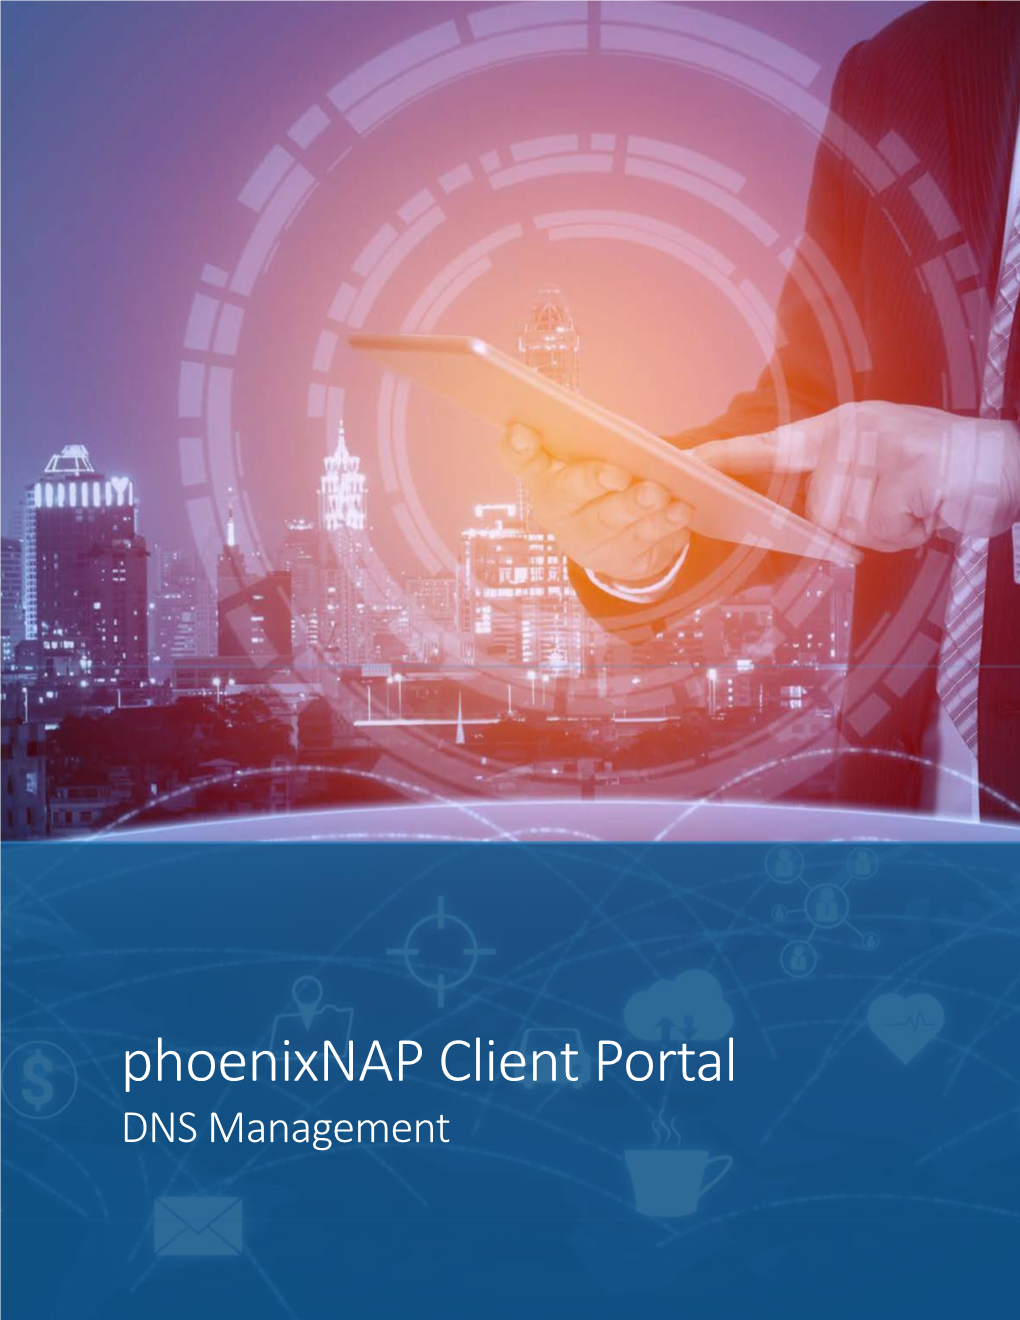 Phoenixnap Client Portal DNS Management